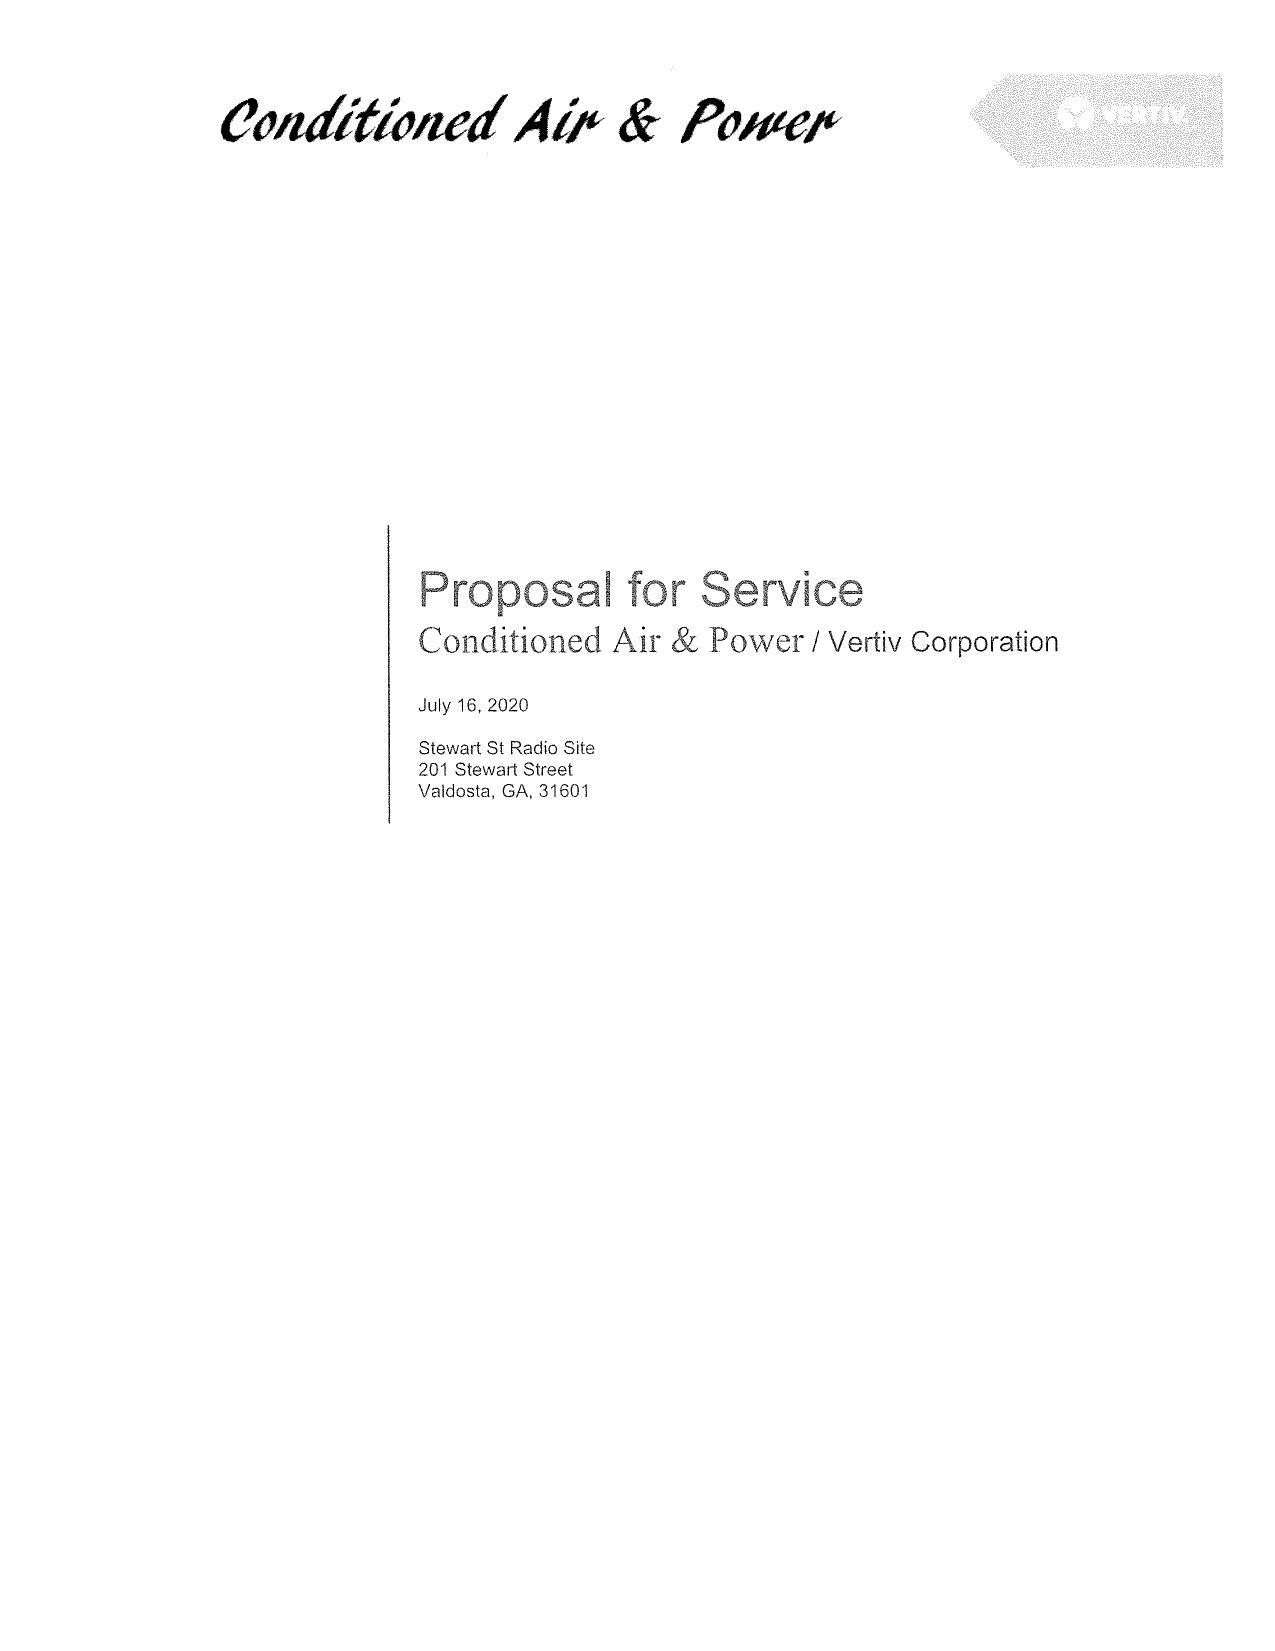 Stewart St, Valdosta, Radio Site Proposal for Service